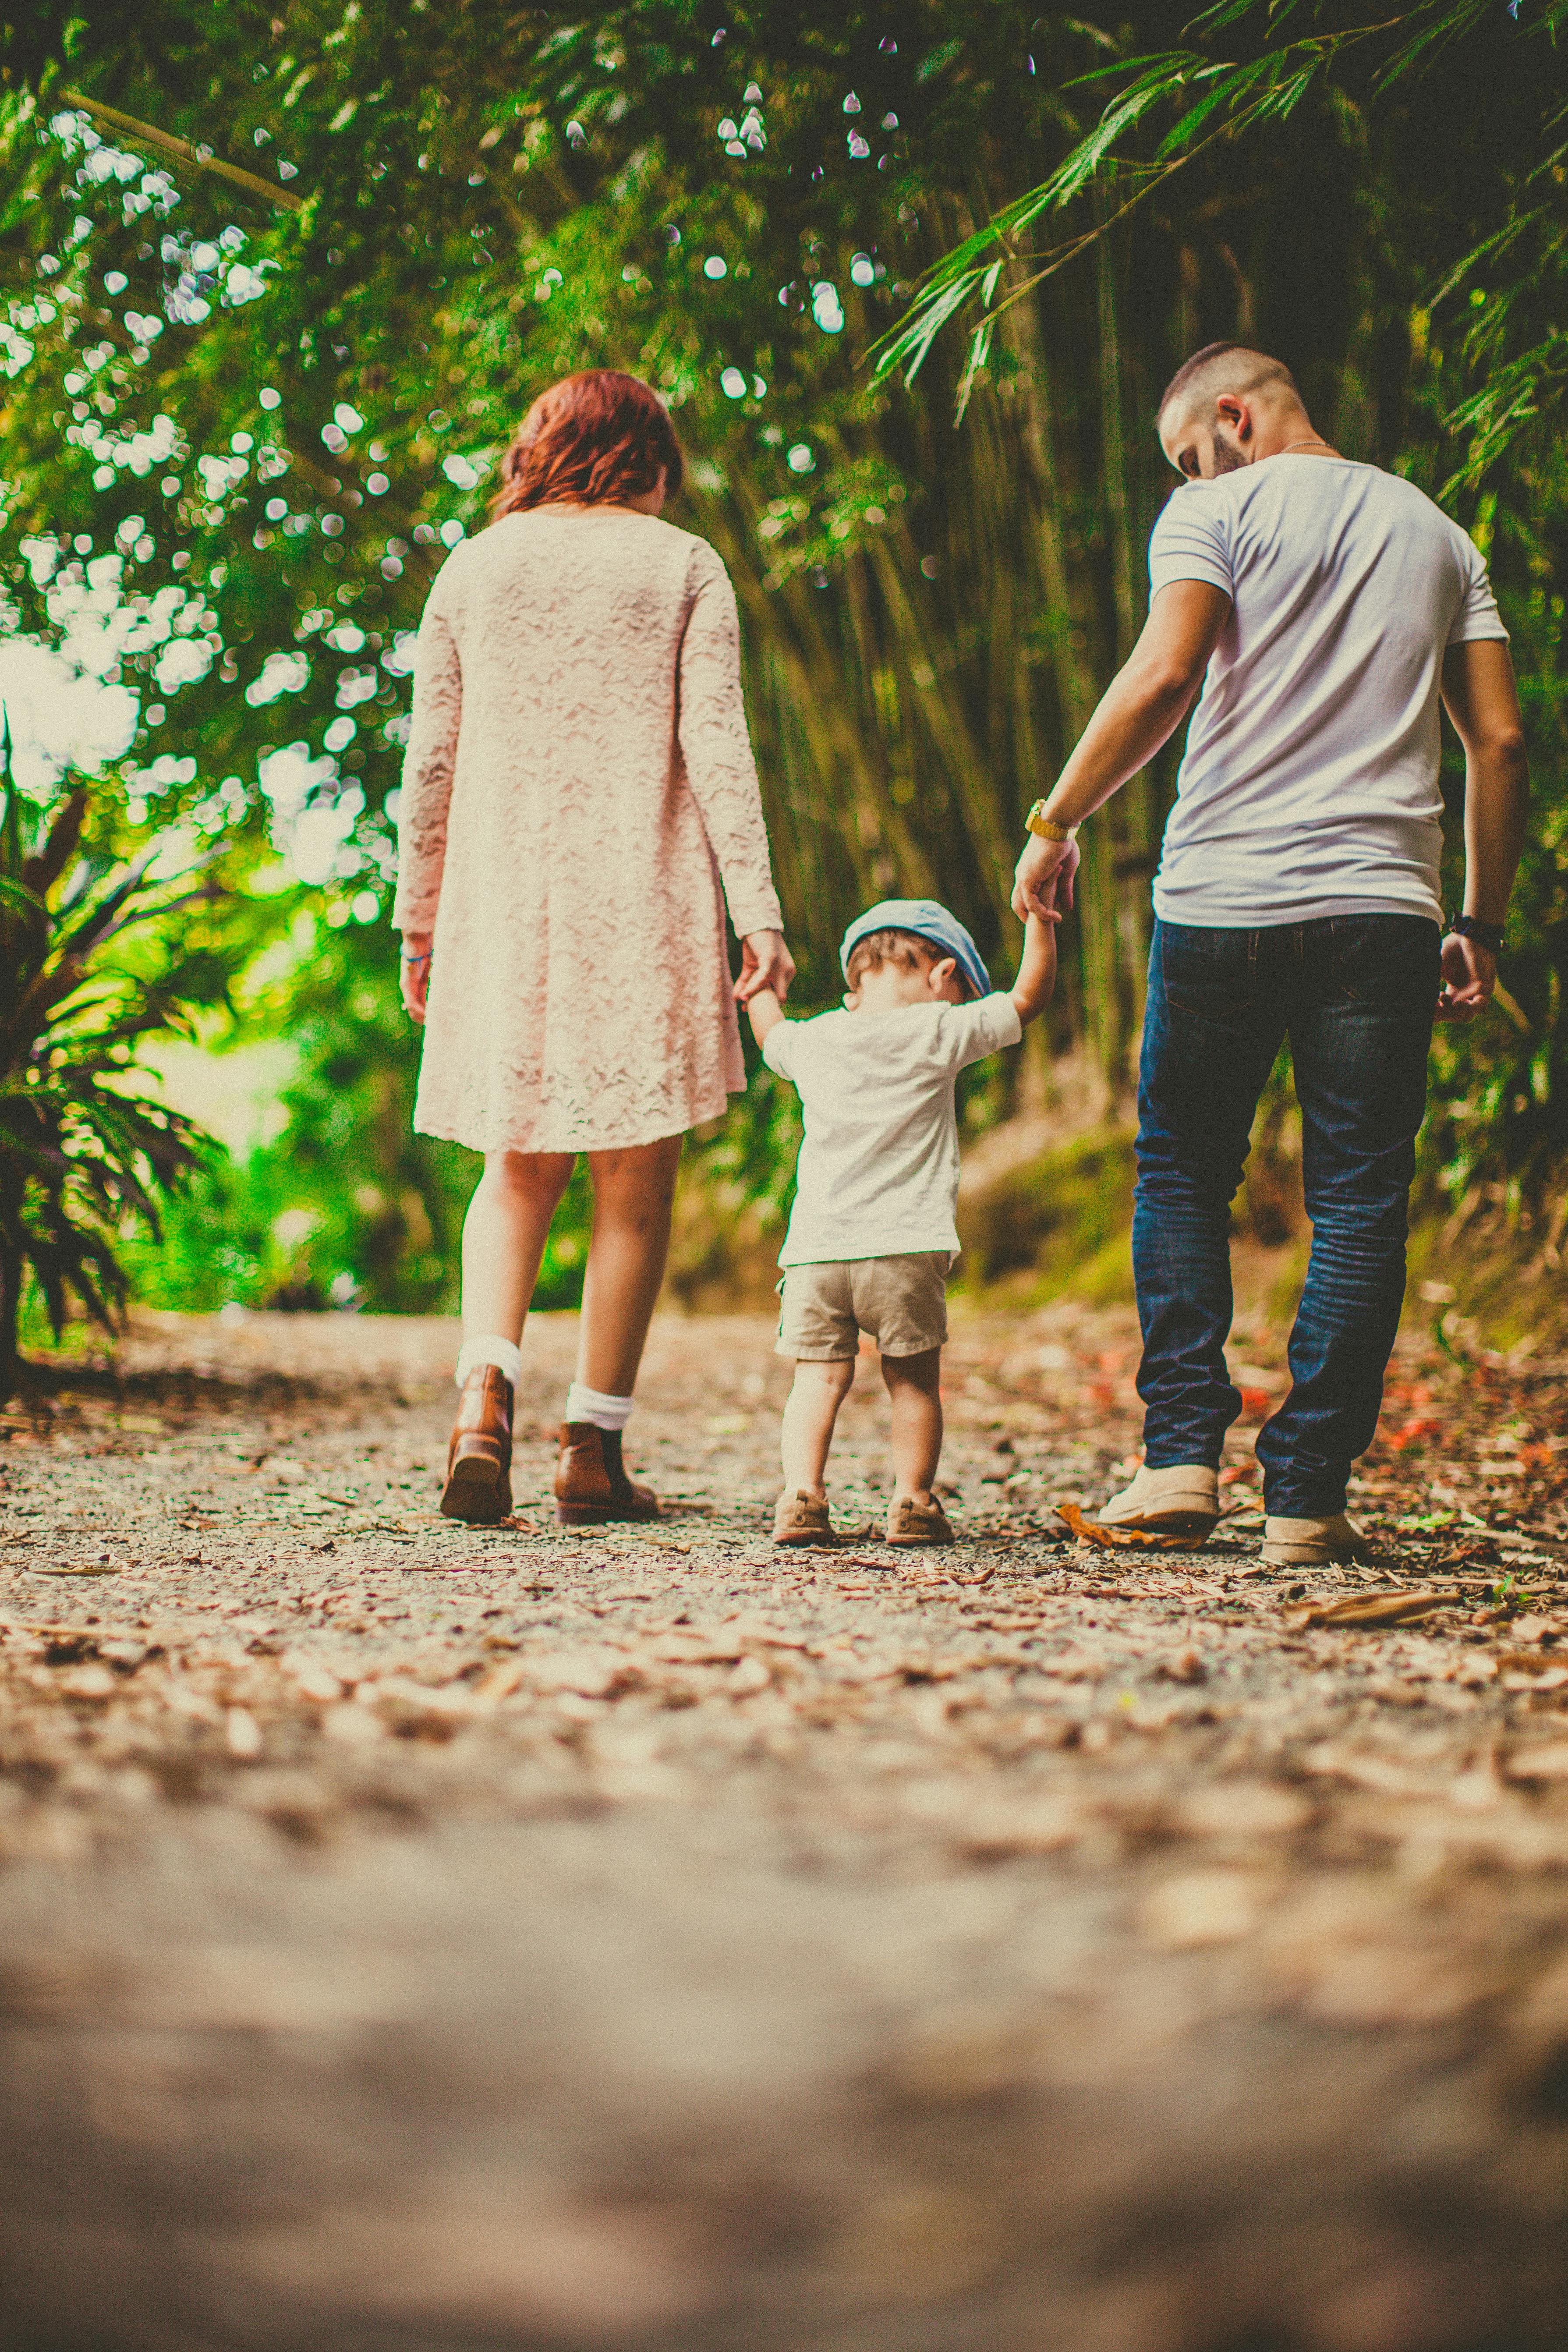 Ein Paar beim Spaziergang mit seinem Kind | Quelle: Pexels